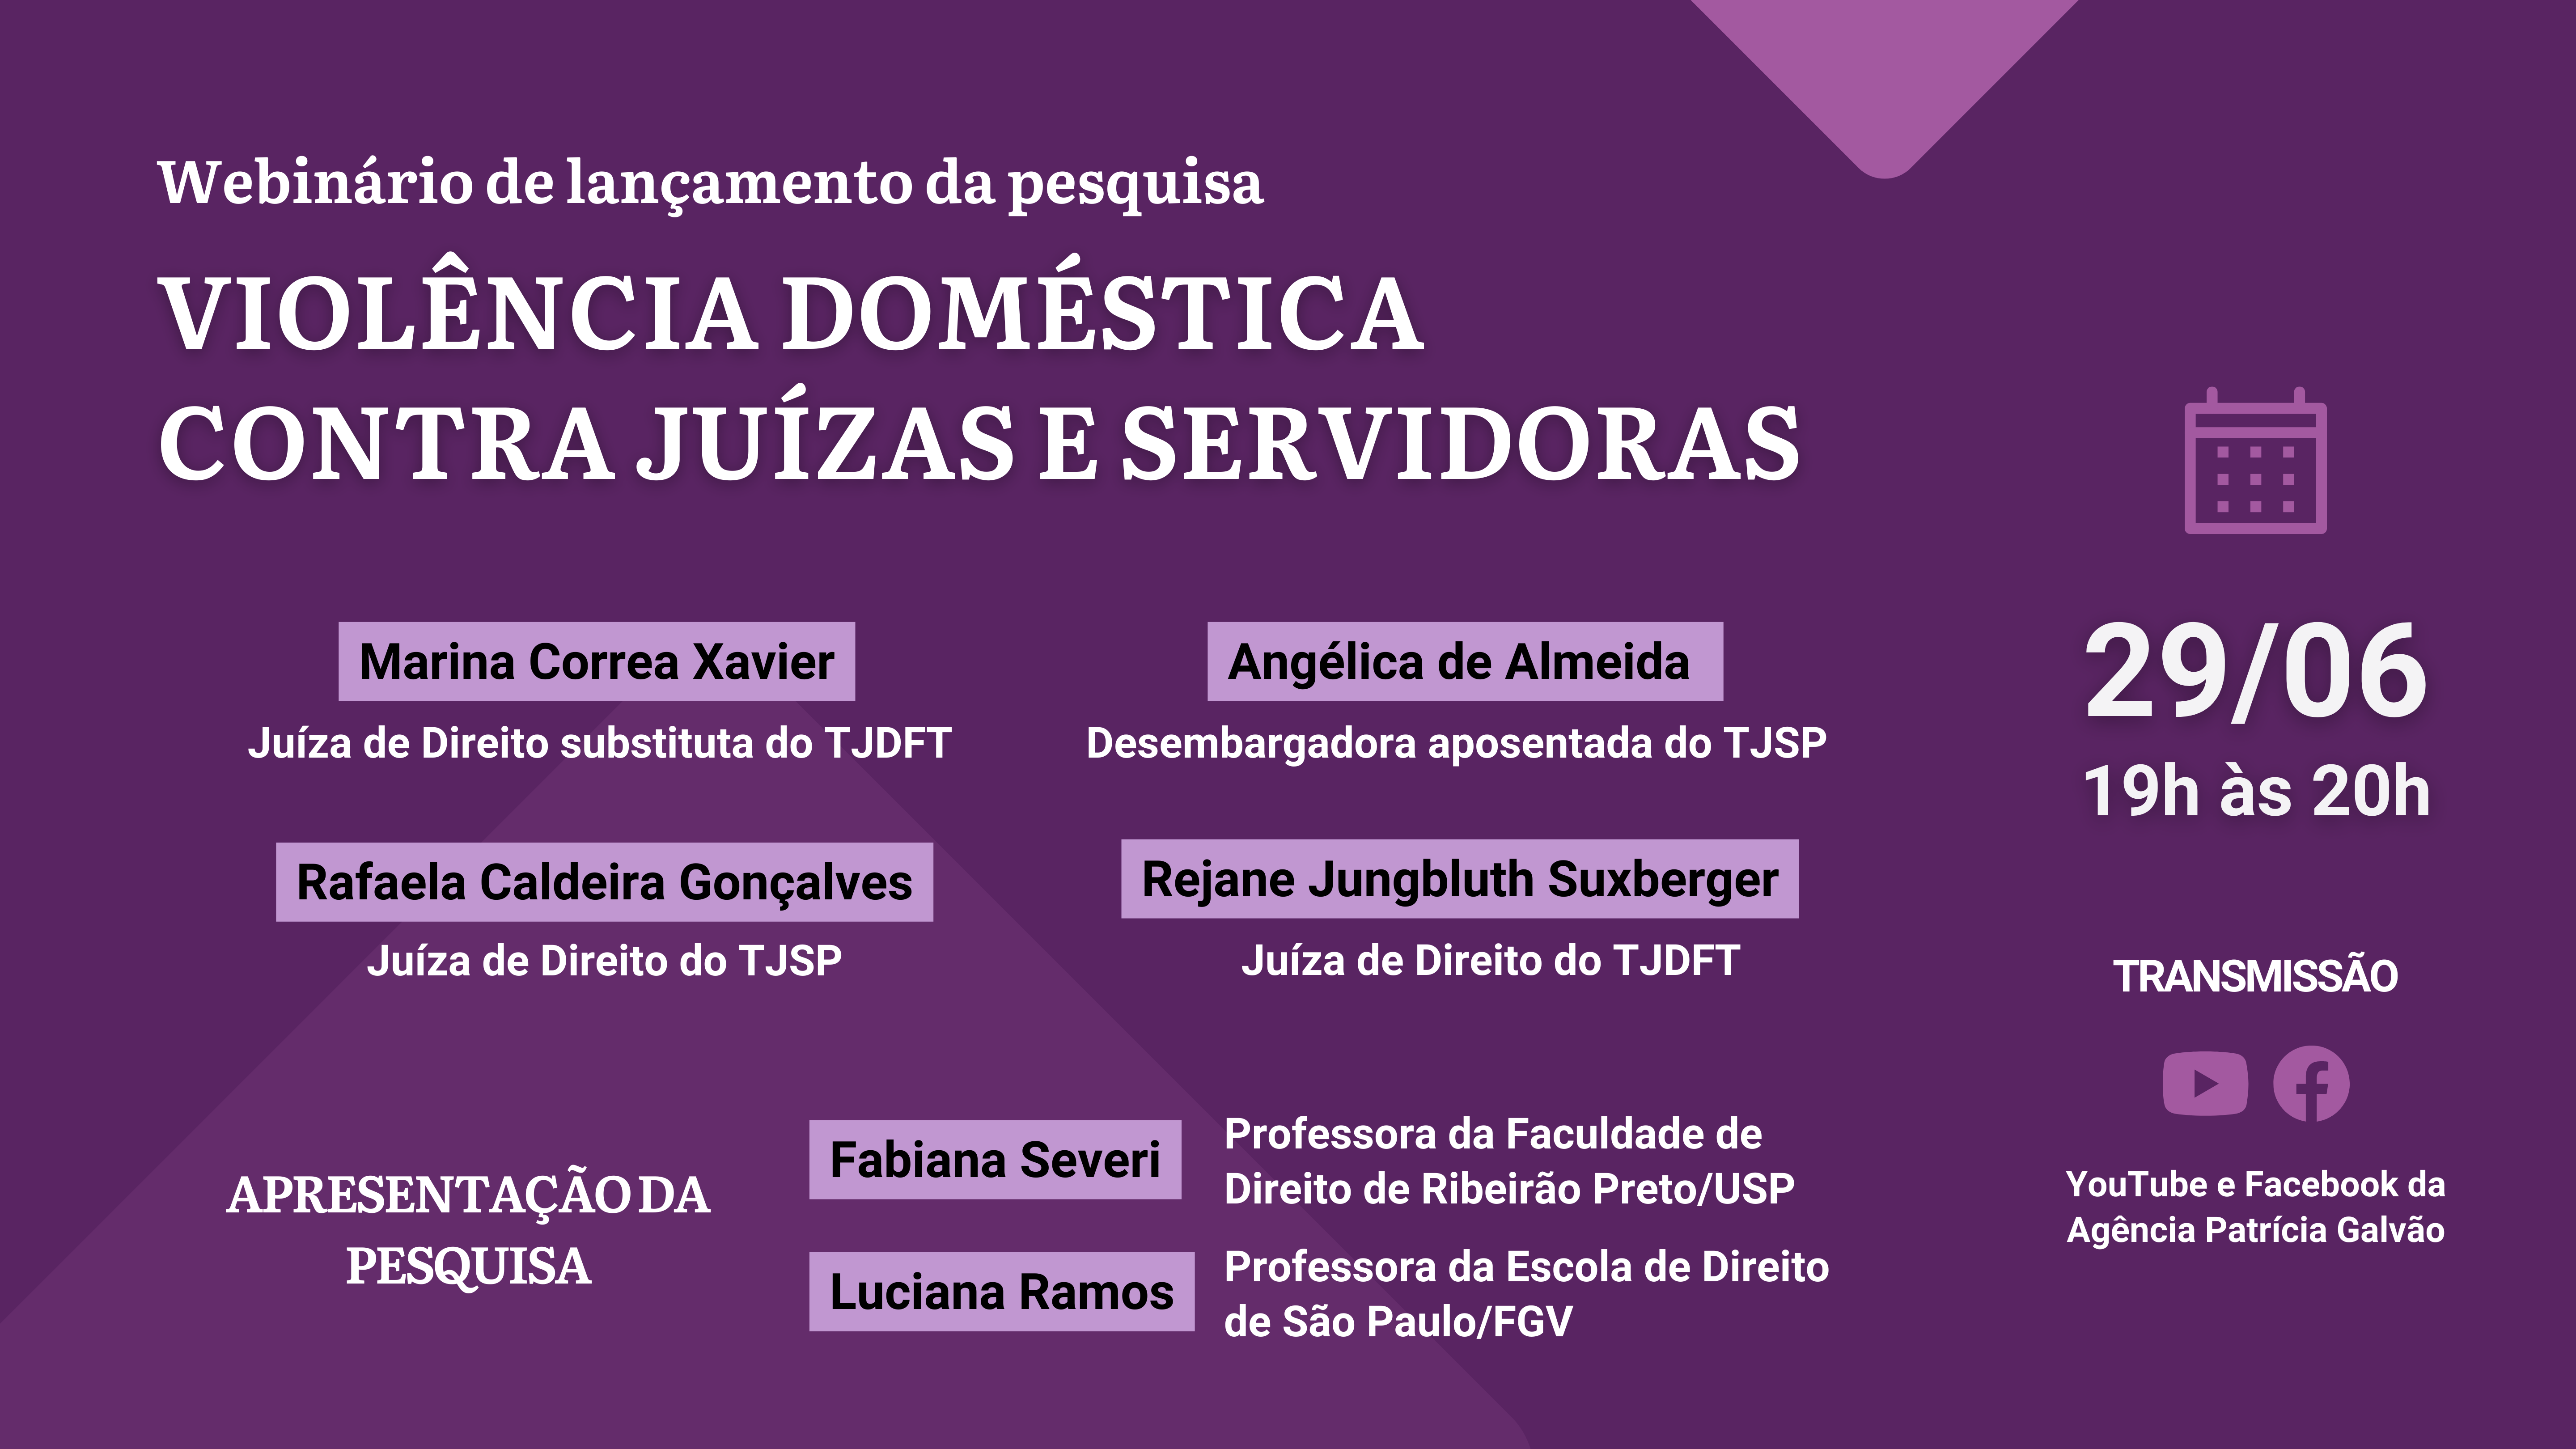 Webinário Lançamento da pesquisa Violência Doméstica contra Juízas e Servidoras (1920 × 1080 px)